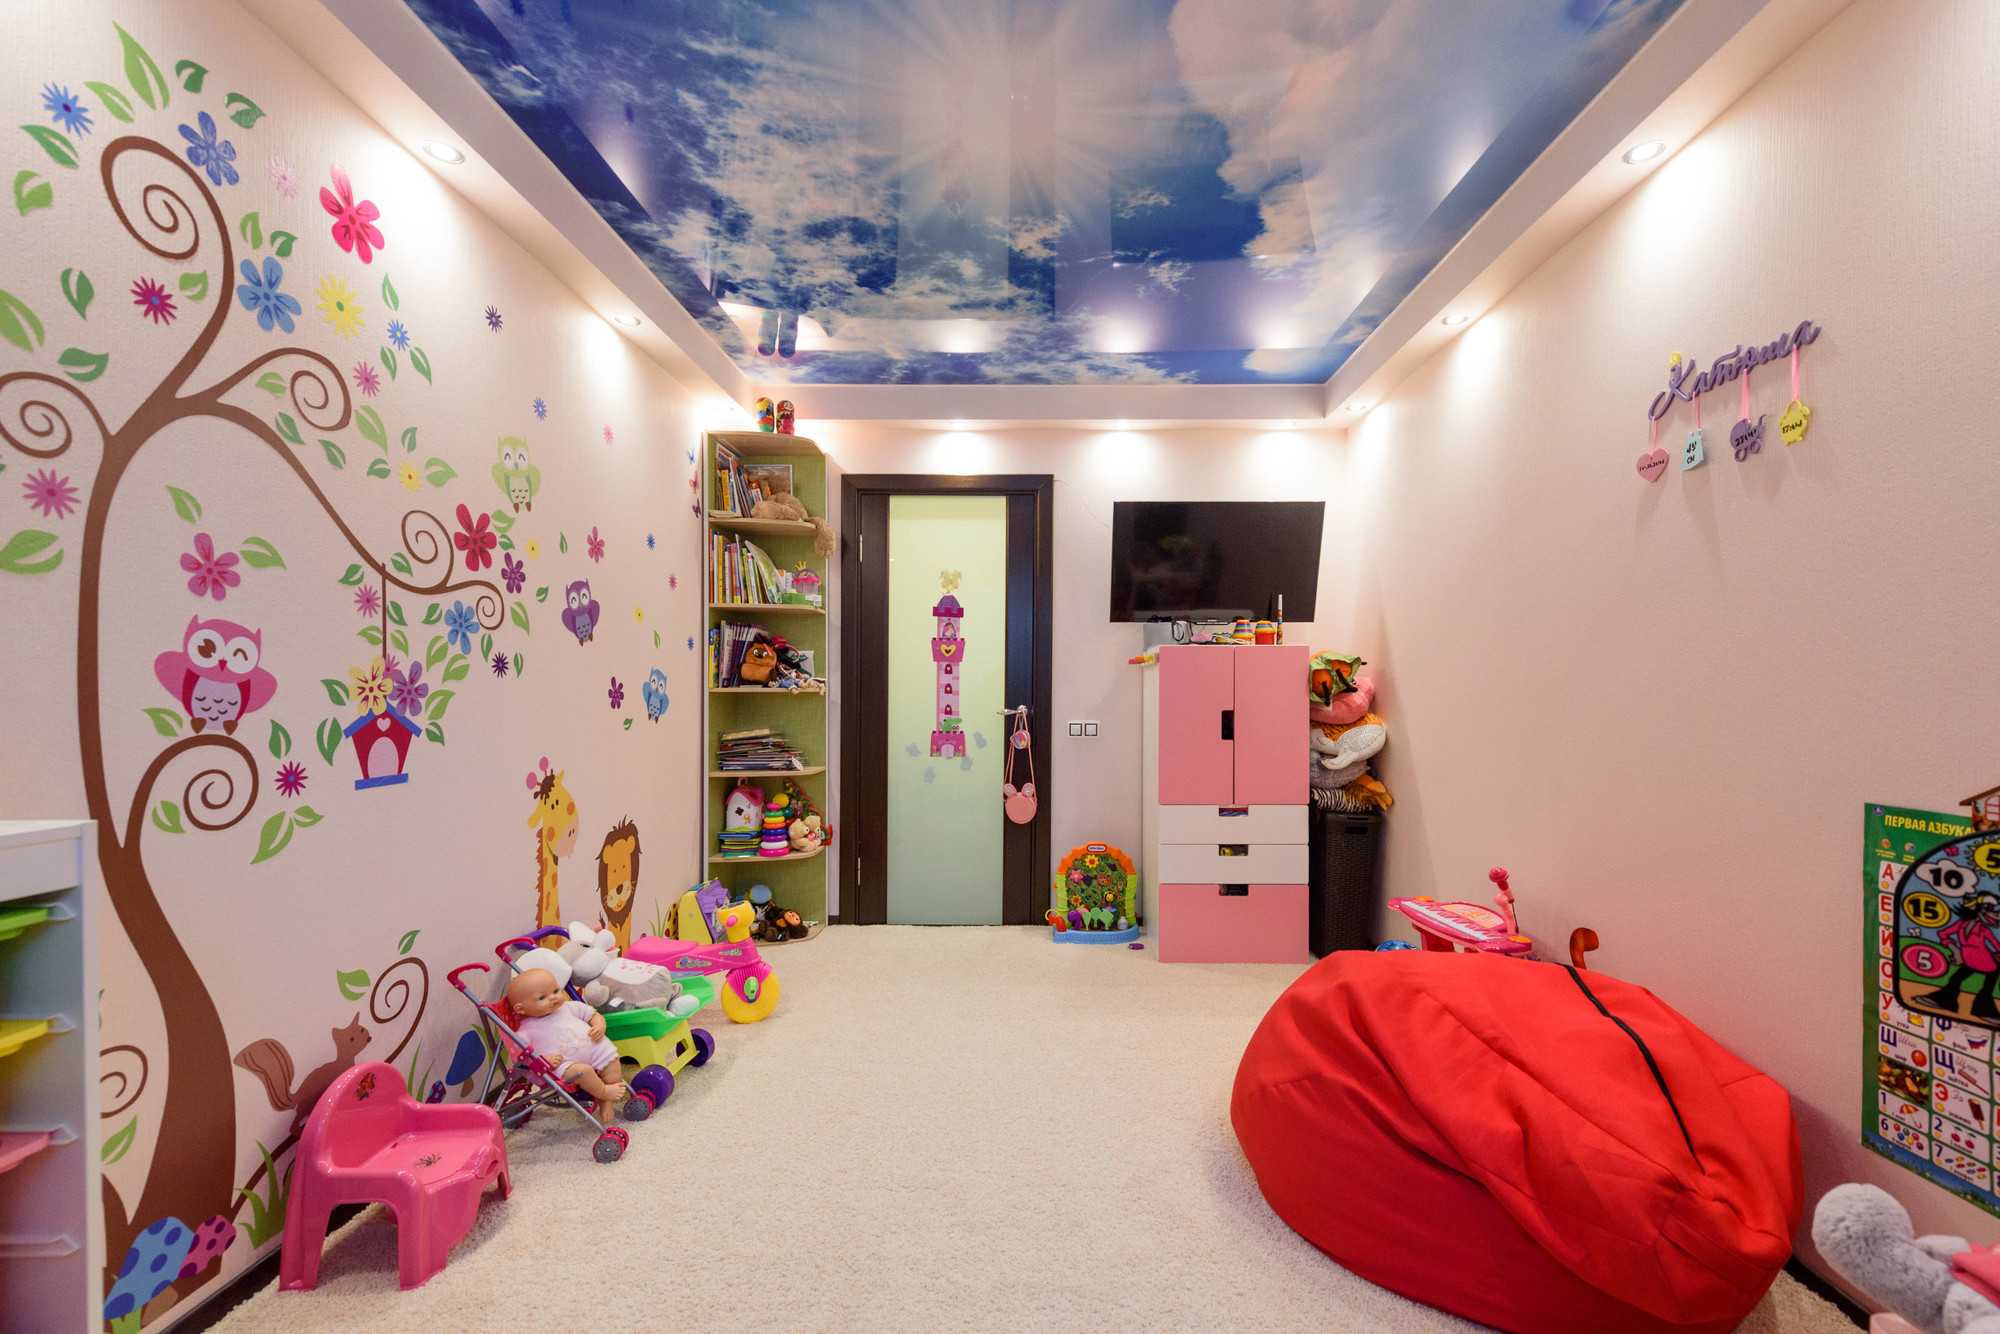 Потолок в детской комнате - варианты оформления потолка в детской